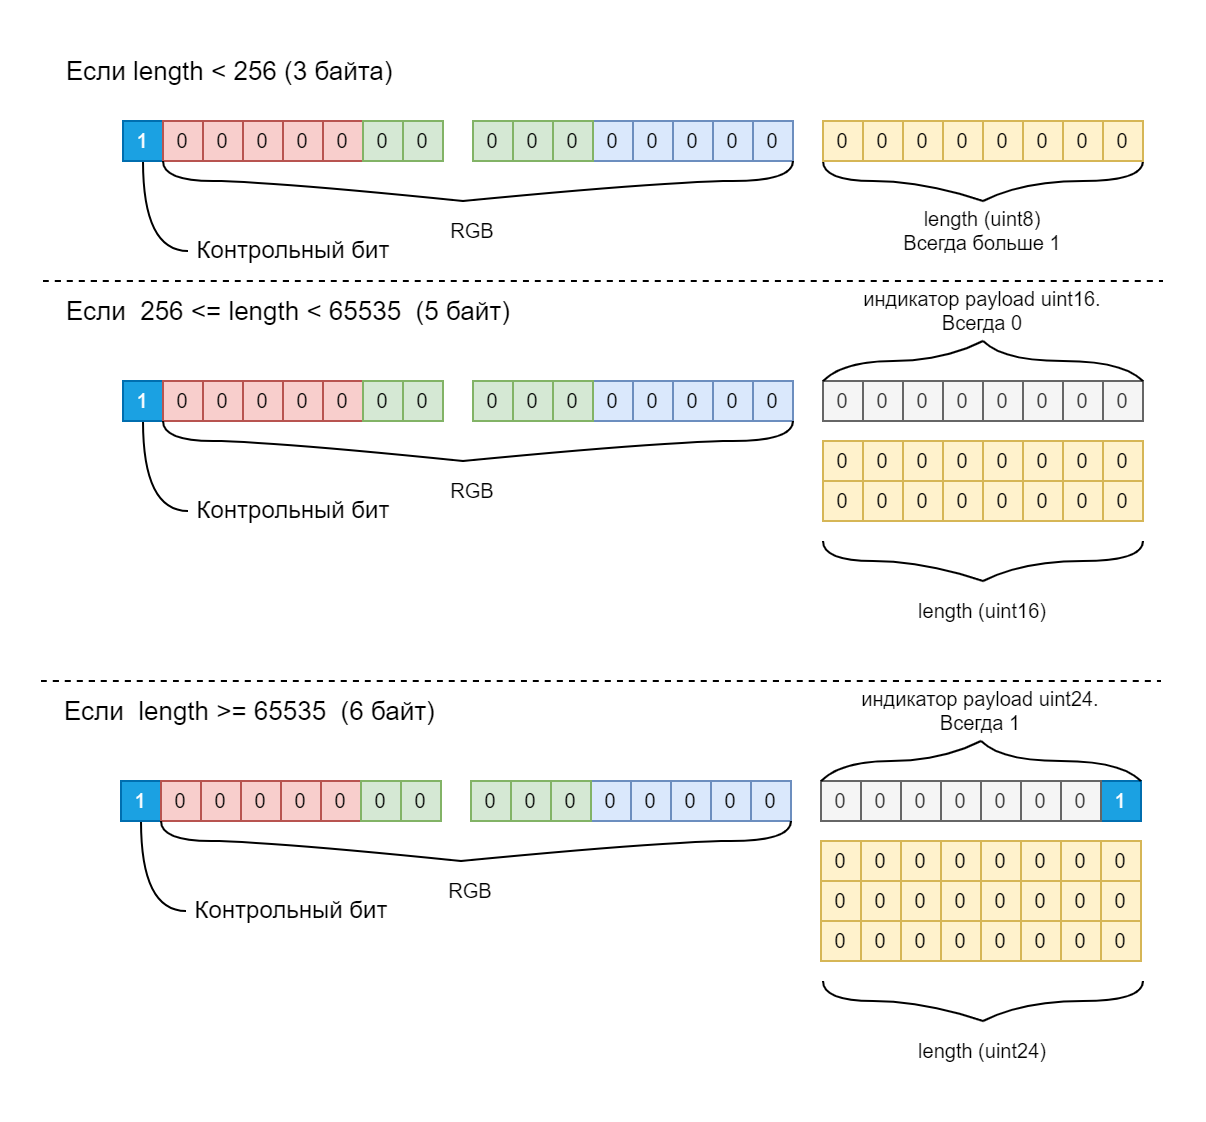 Схемы упаковки серии одинаковых пикселей алгоритмом RLE